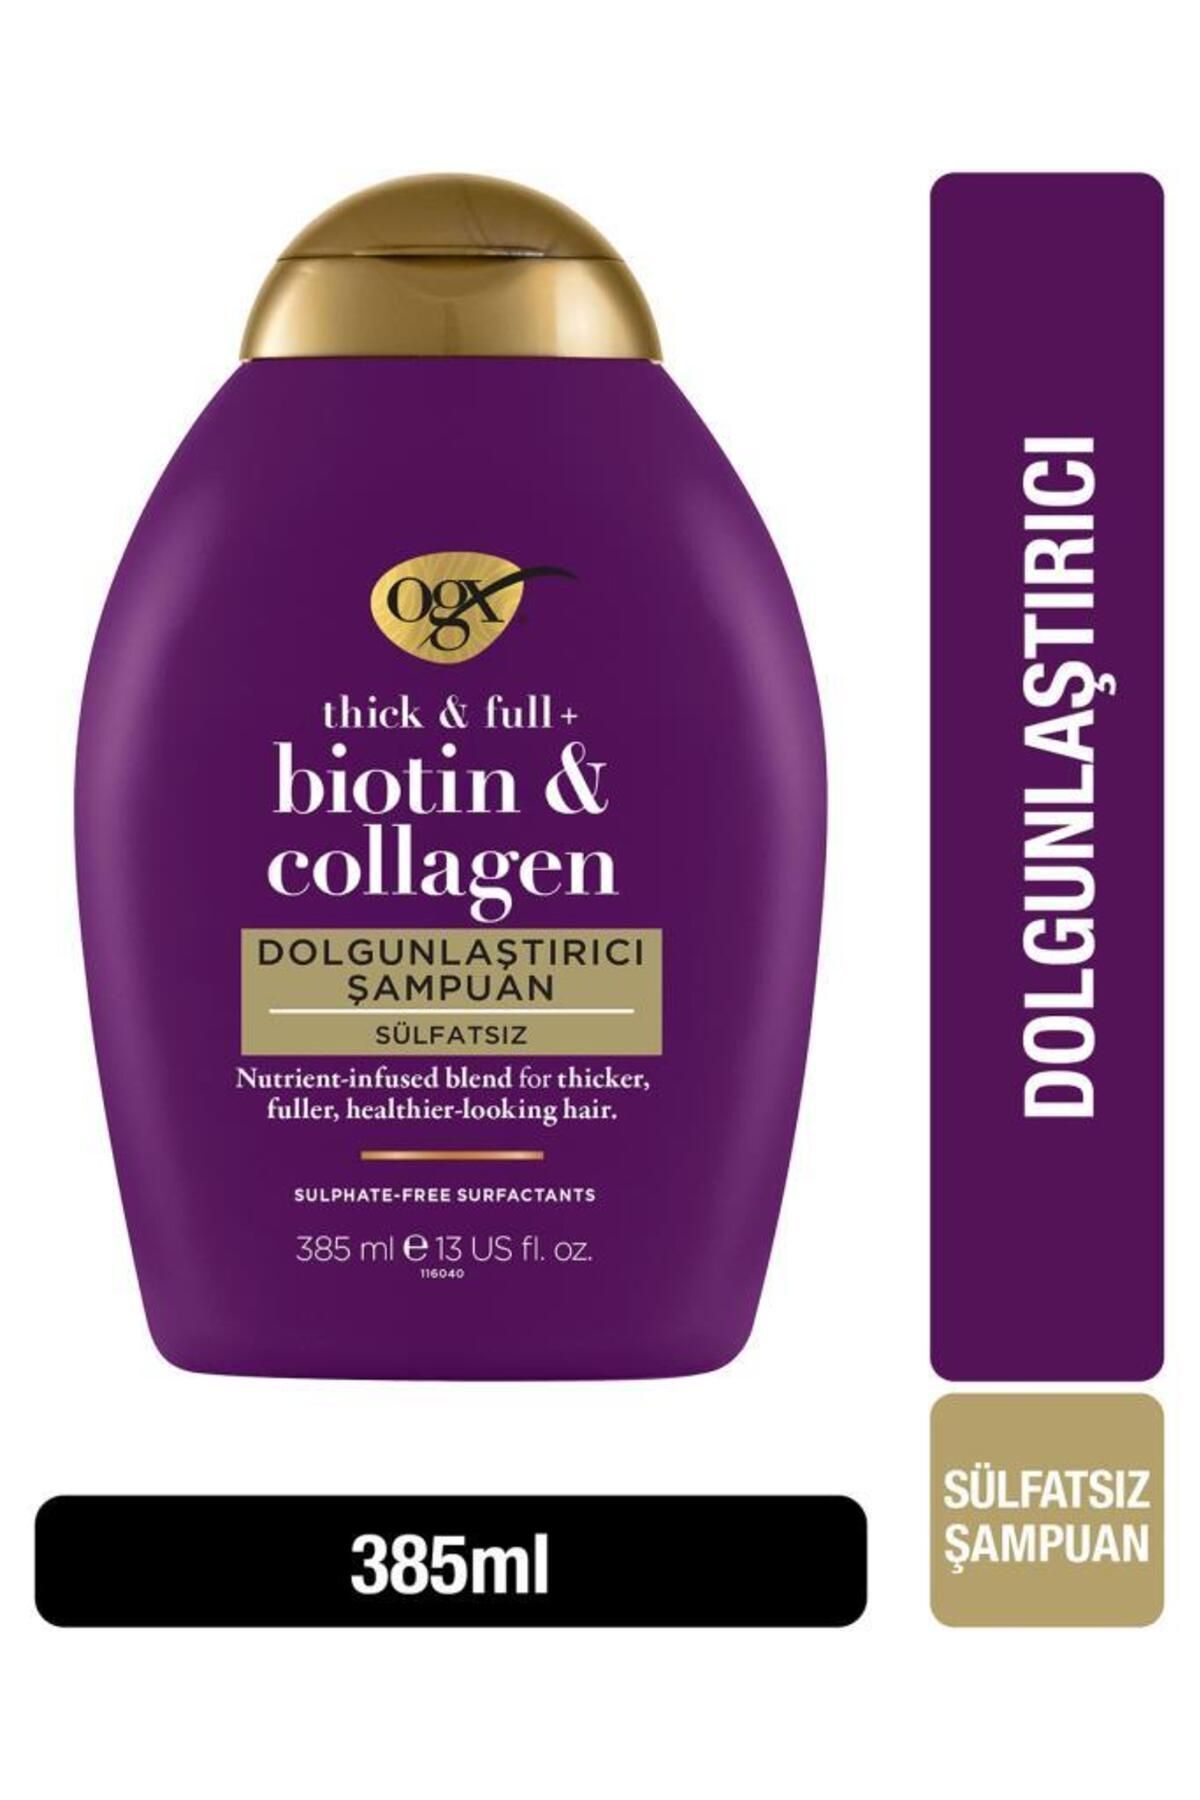 OGX Dolgunlaştirici Biotin & Kolajen Sülfatsız Şampuan 385 ml